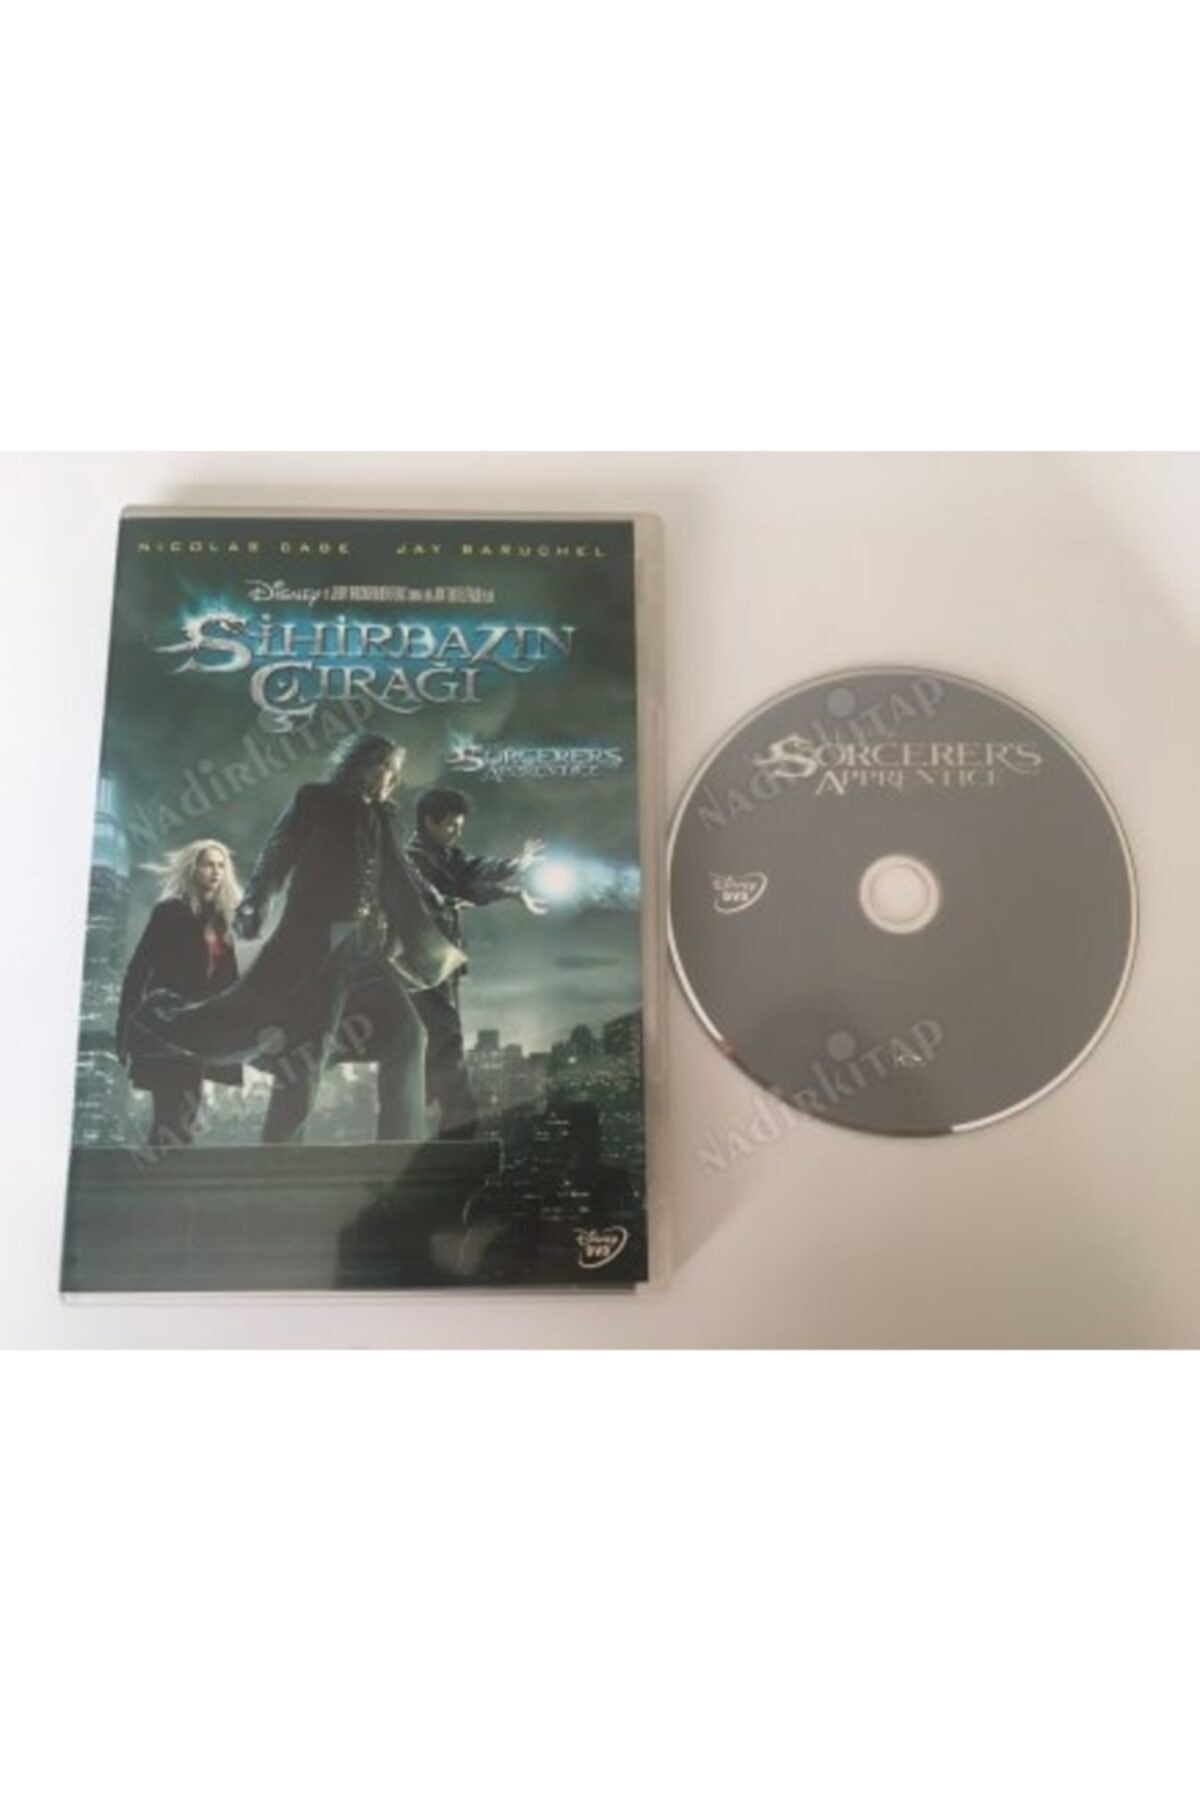 Plakperest The Sorcerer’s Apprentıce- Sihirbazın Çırağı -104 Dakika Ekstralar Dvd Film